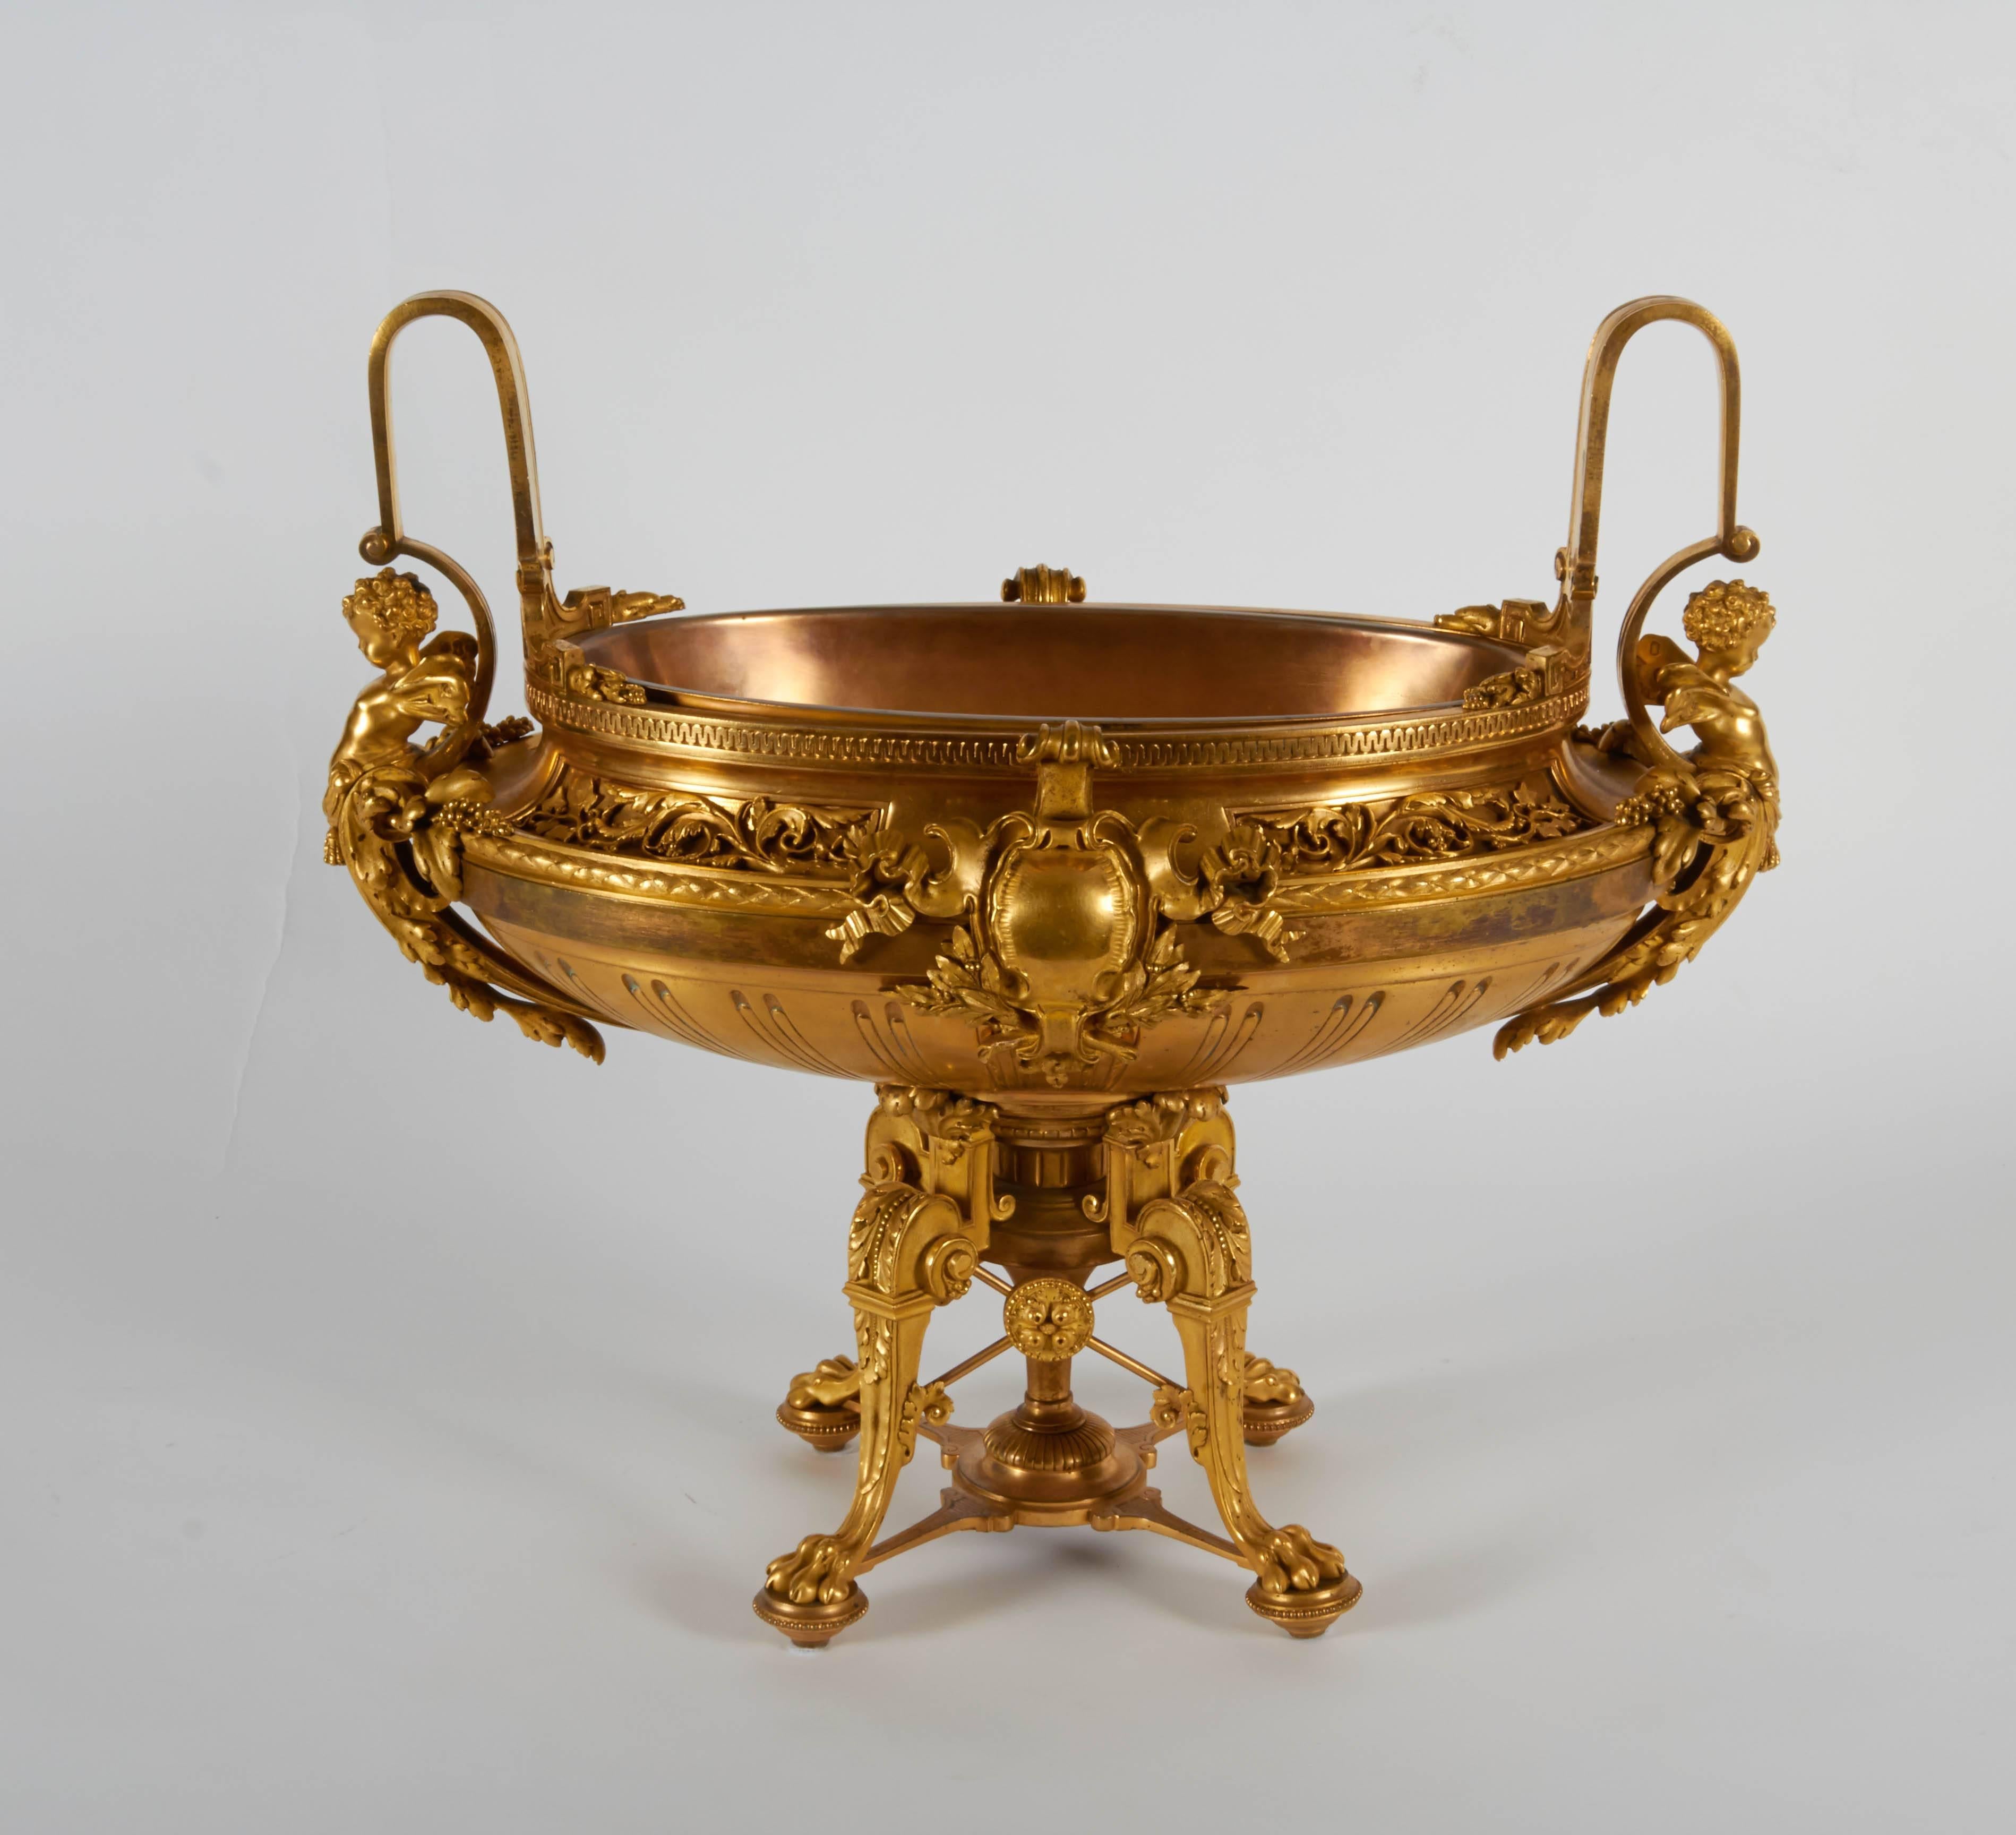 Eine außergewöhnliche Qualität antiken Französisch Louis XVI-Stil, doré Bronze dreiteilige Mittelstück oder Kandelaber Garnitur. Jedes Stück ist mit geflügelten Putten, Kränzen und Blumengirlanden versehen und fein von Hand gemeißelt. Jedes Stück